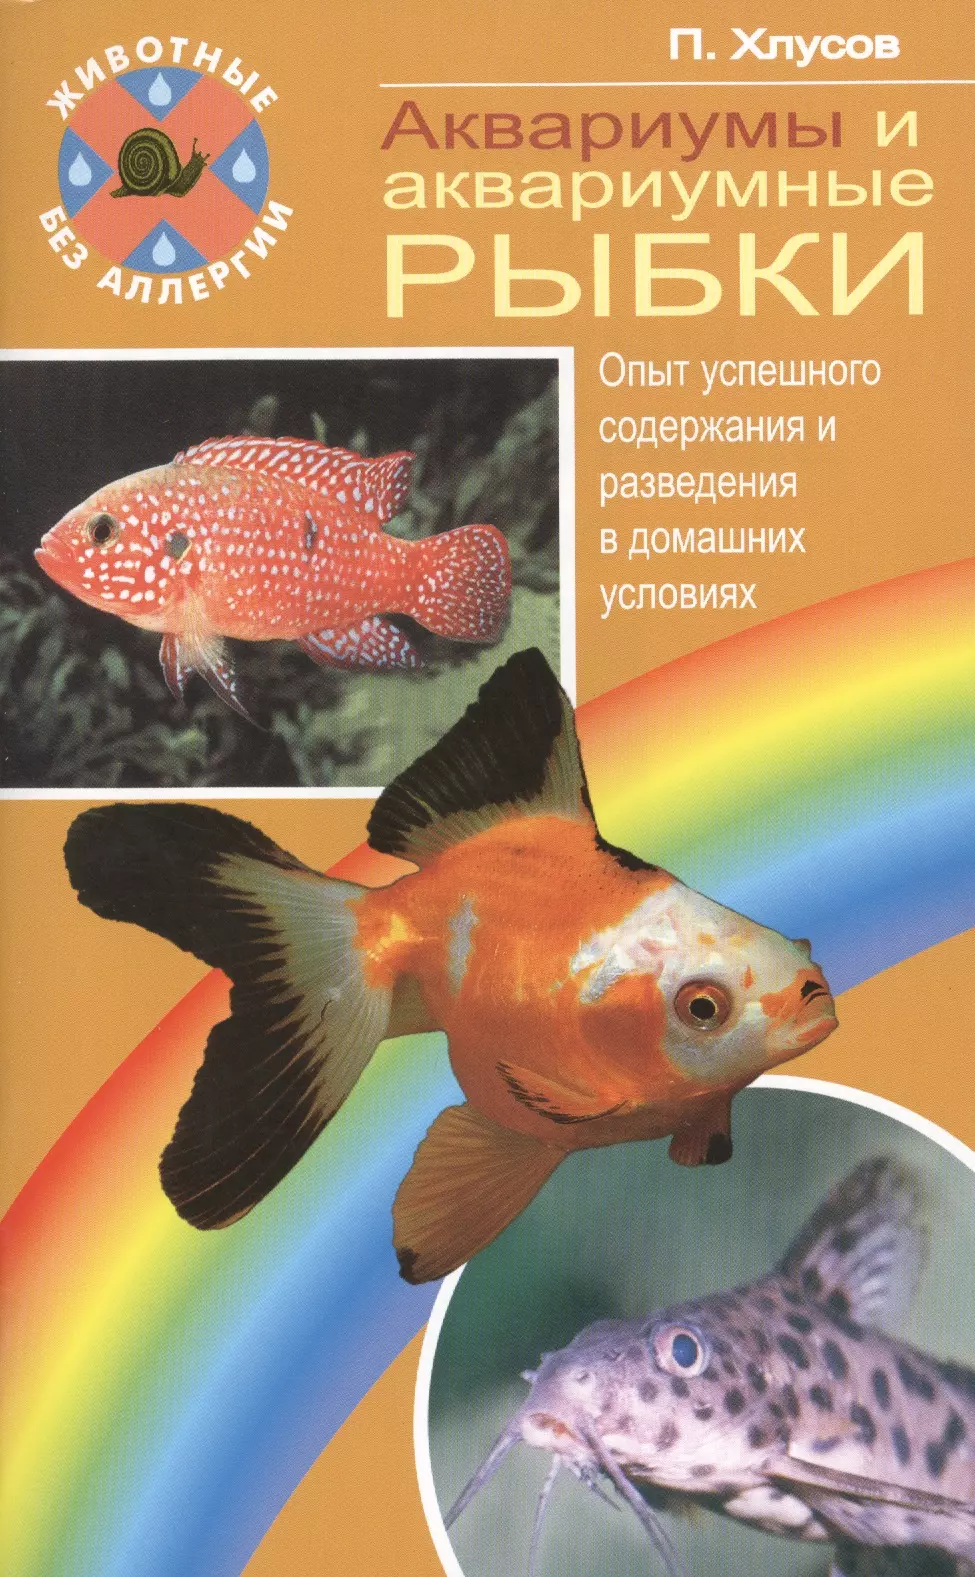 Книга аквариум отзывы. Книги про аквариумных рыб. Книга про аквариумных рыбок. Аквариум книга. Книга про разведение аквариумных рыбок.